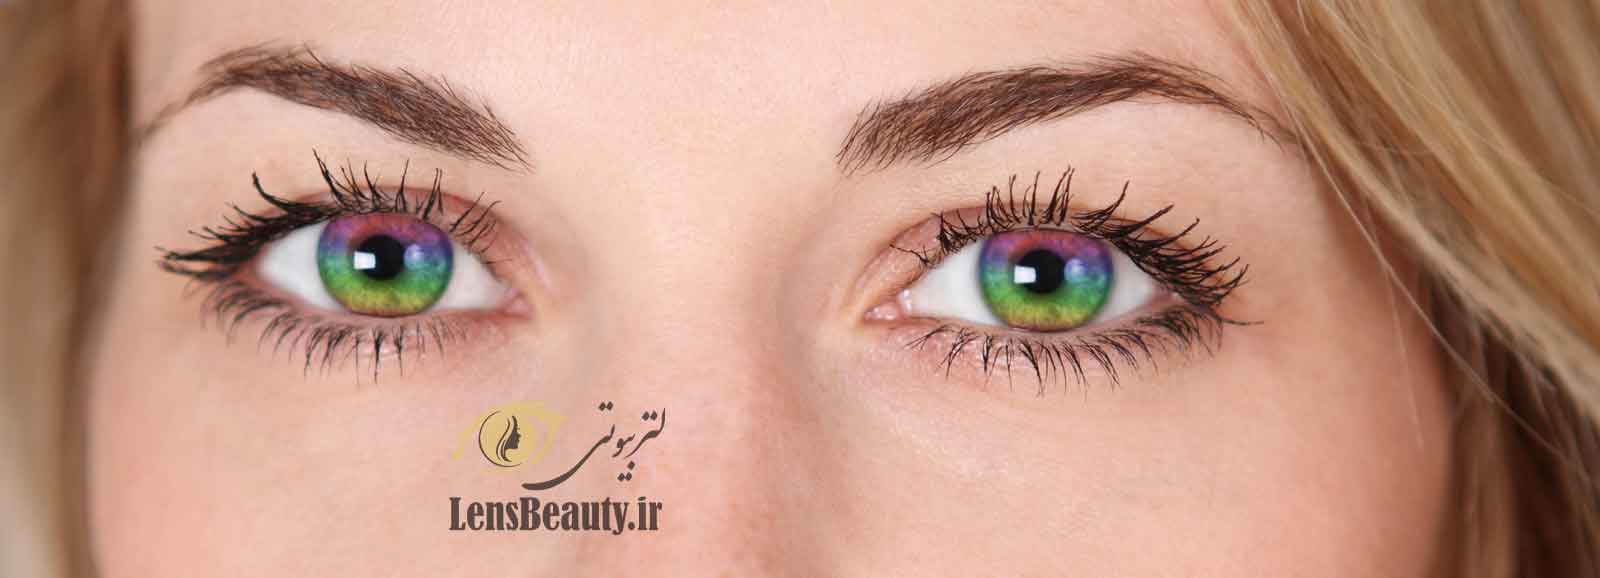 لنز رنگی چشم دارای دو نوع "لنز رنگی زیبایی" و لنز رنگی نمره دار است.